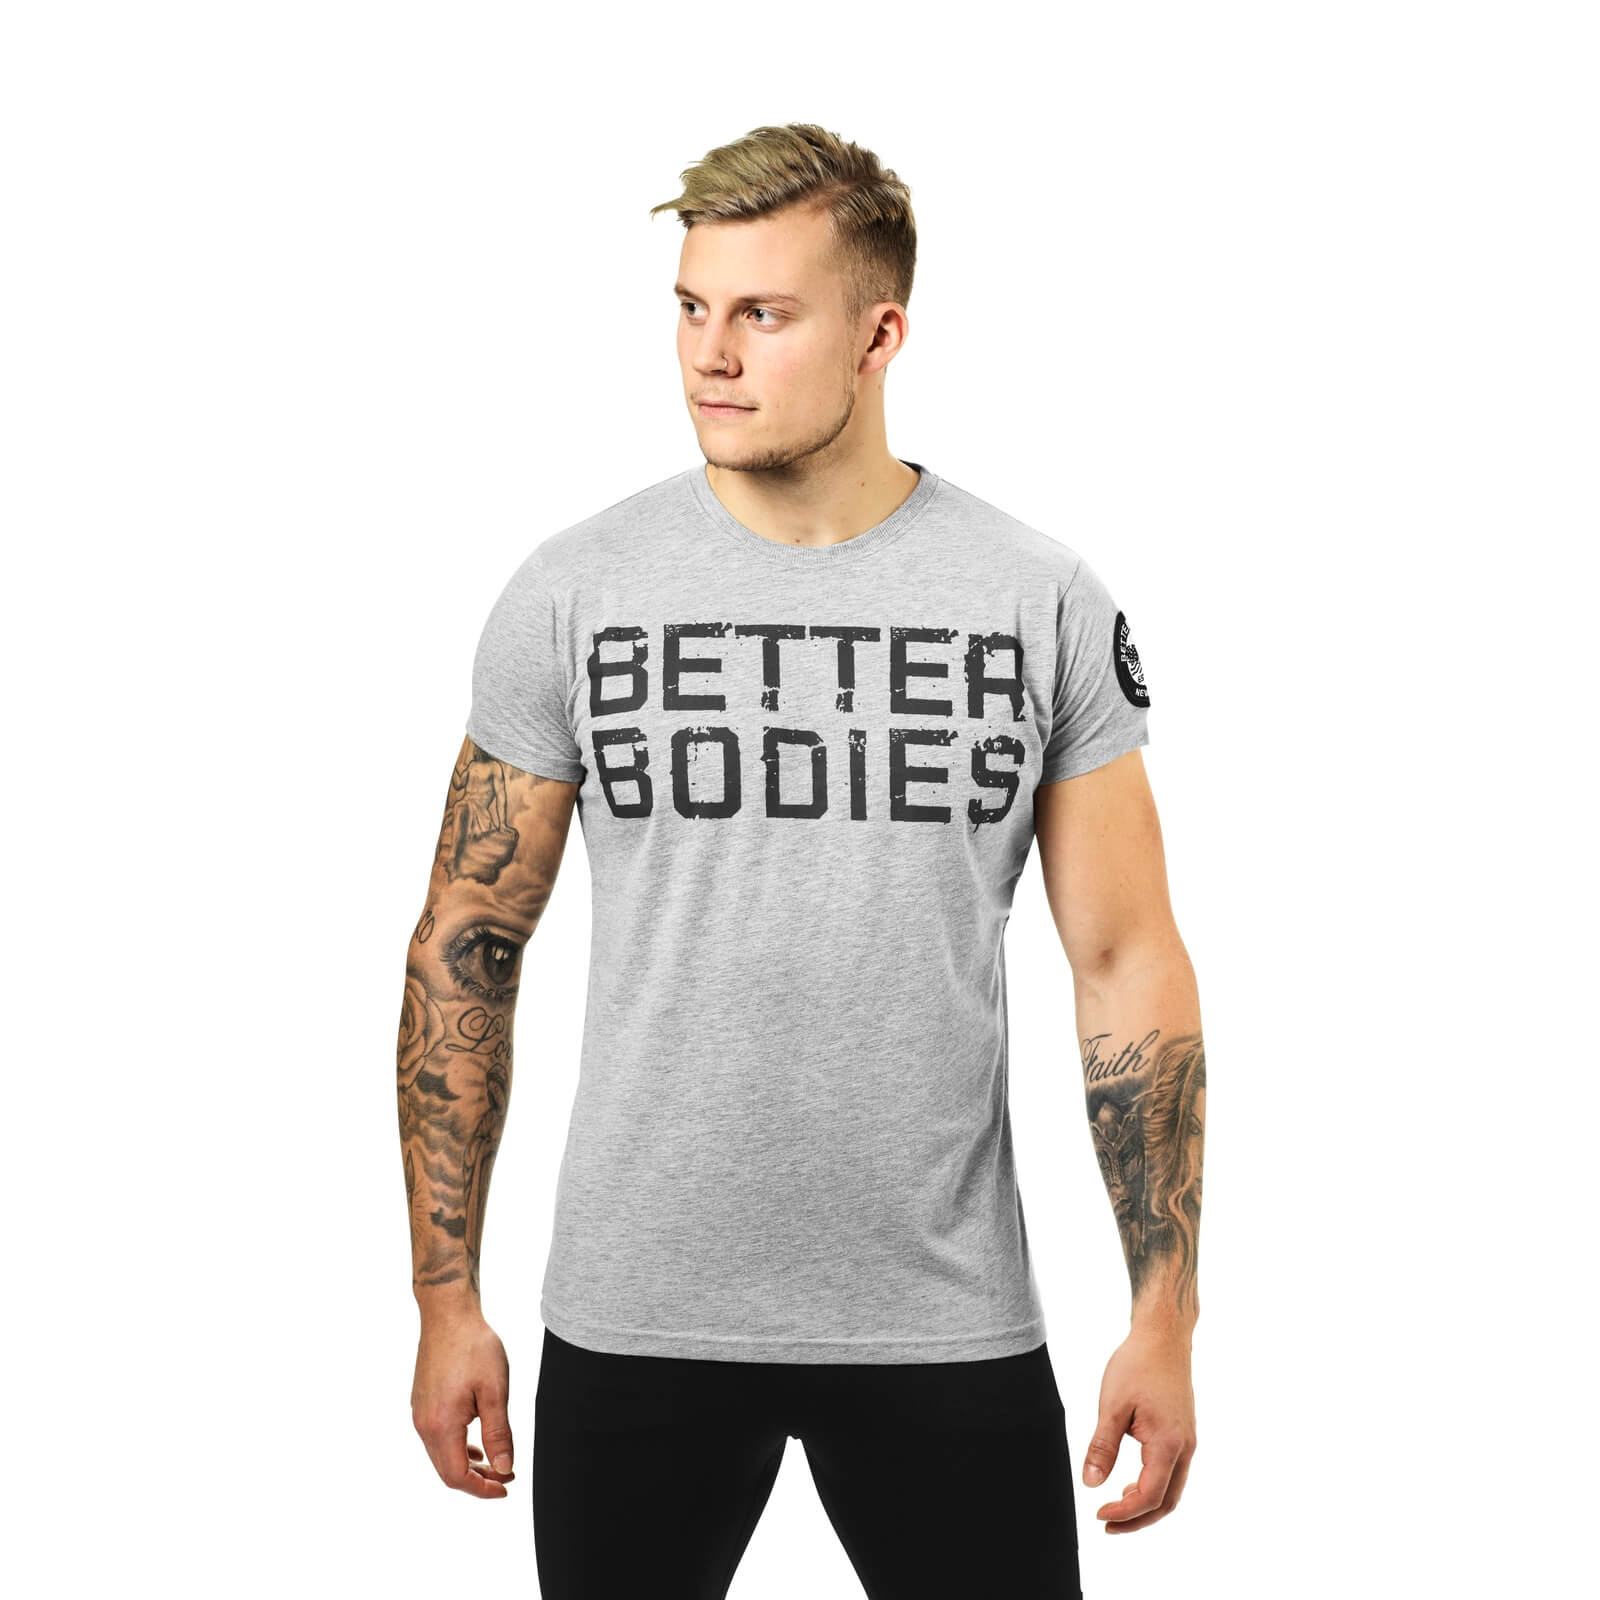 Kolla in Basic Logo Tee, grey melange, Better Bodies hos SportGymButiken.se